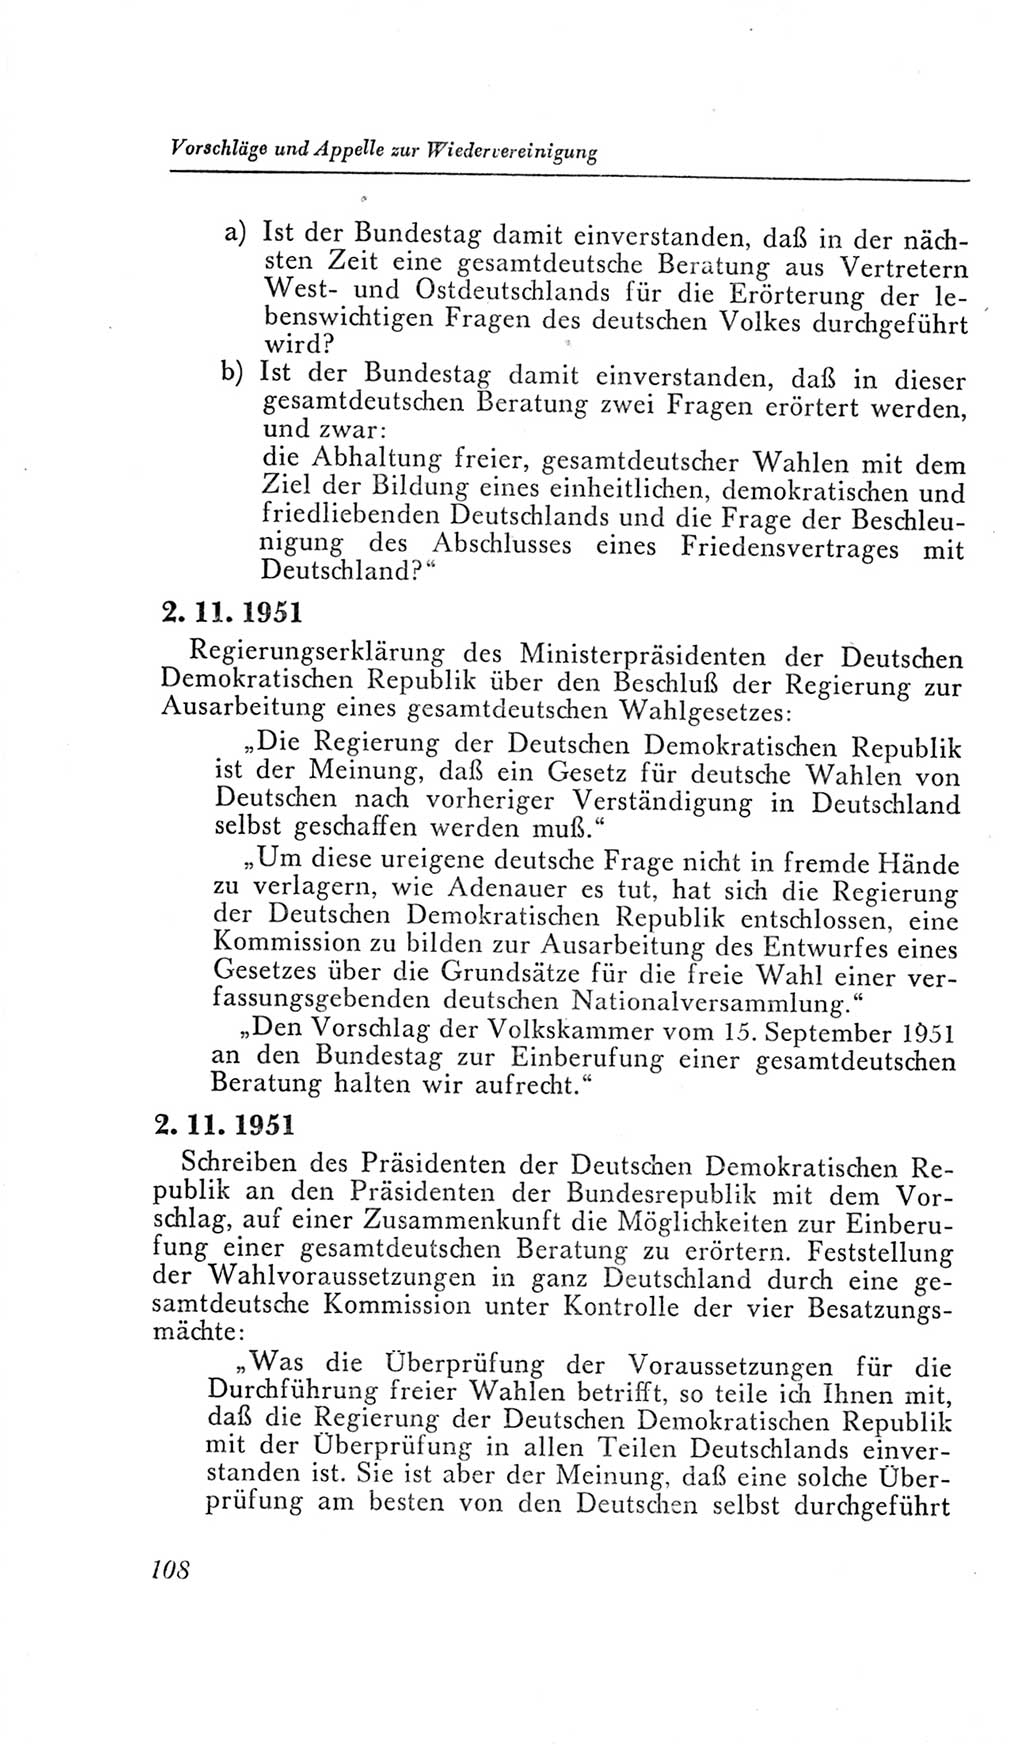 Handbuch der Volkskammer (VK) der Deutschen Demokratischen Republik (DDR), 2. Wahlperiode 1954-1958, Seite 108 (Hdb. VK. DDR, 2. WP. 1954-1958, S. 108)